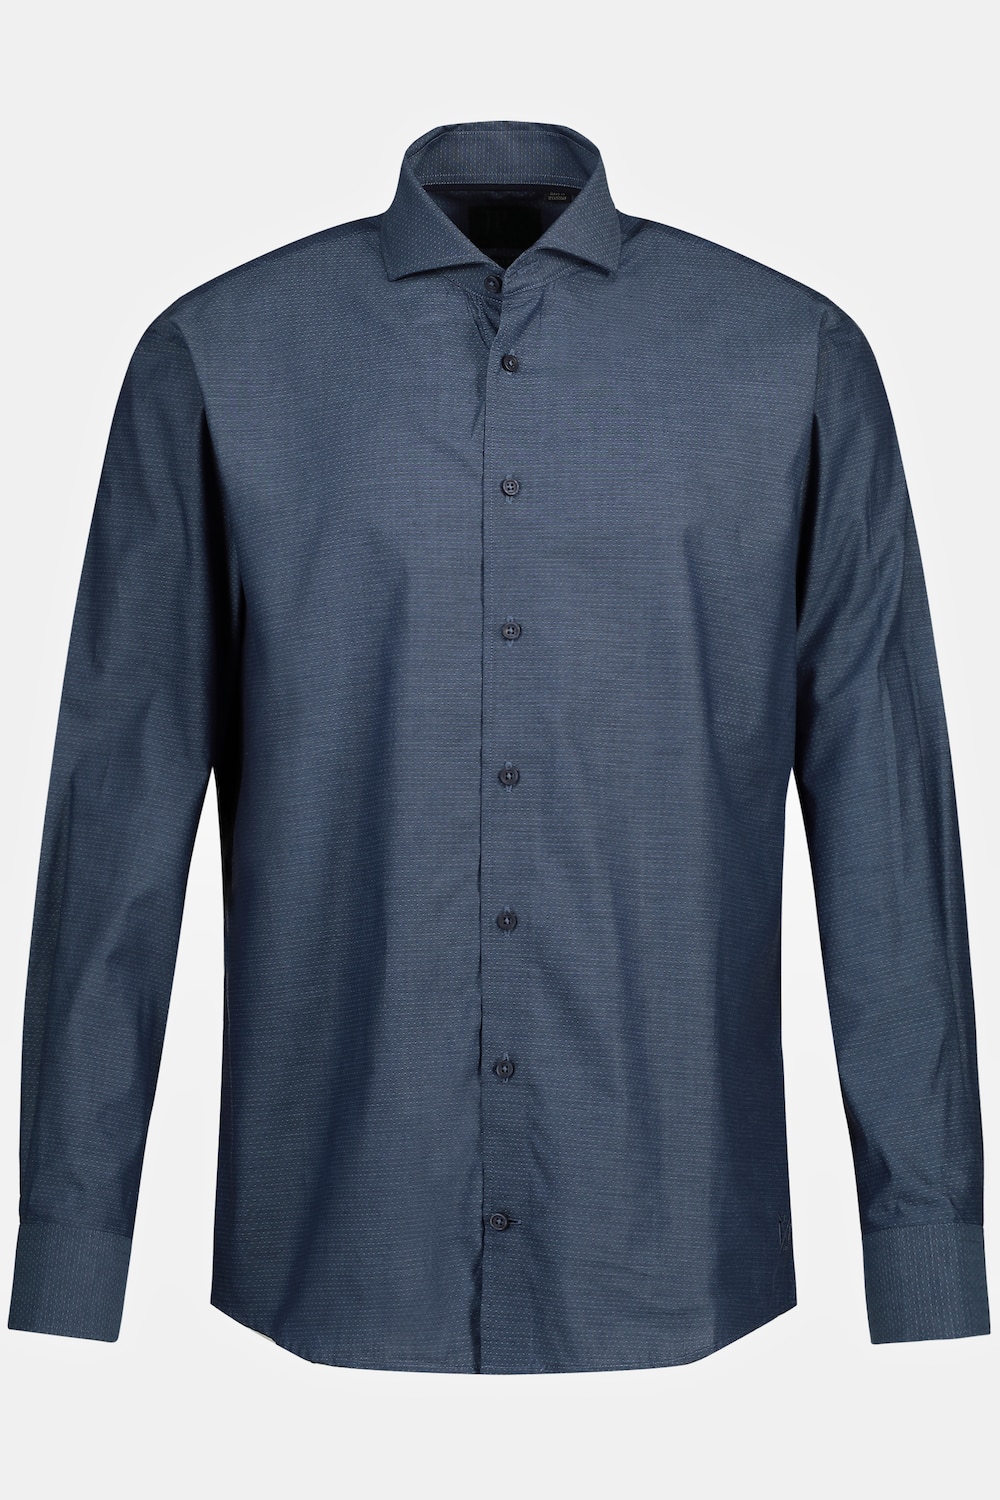 Grote Maten Zakelijk overhemd, Heren, blauw, Maat: 7XL, Katoen, JP1880